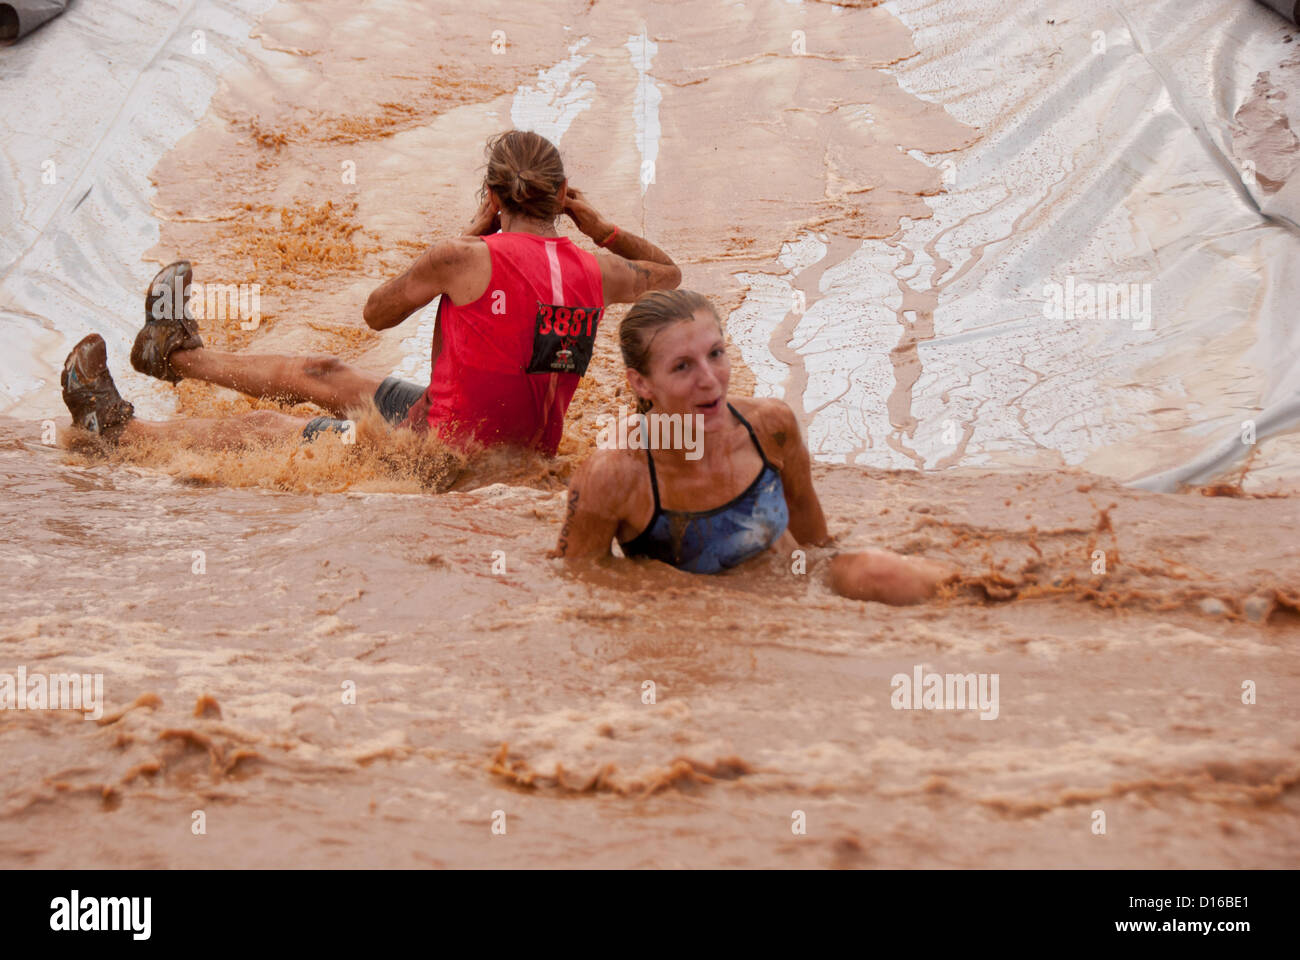 8 décembre 2012 San Antonio, Texas, USA - deux femmes conquérir un obstacle connu sous le nom de 'Skid' pendant le Gladiator Rock'n courir à San Antonio. Banque D'Images